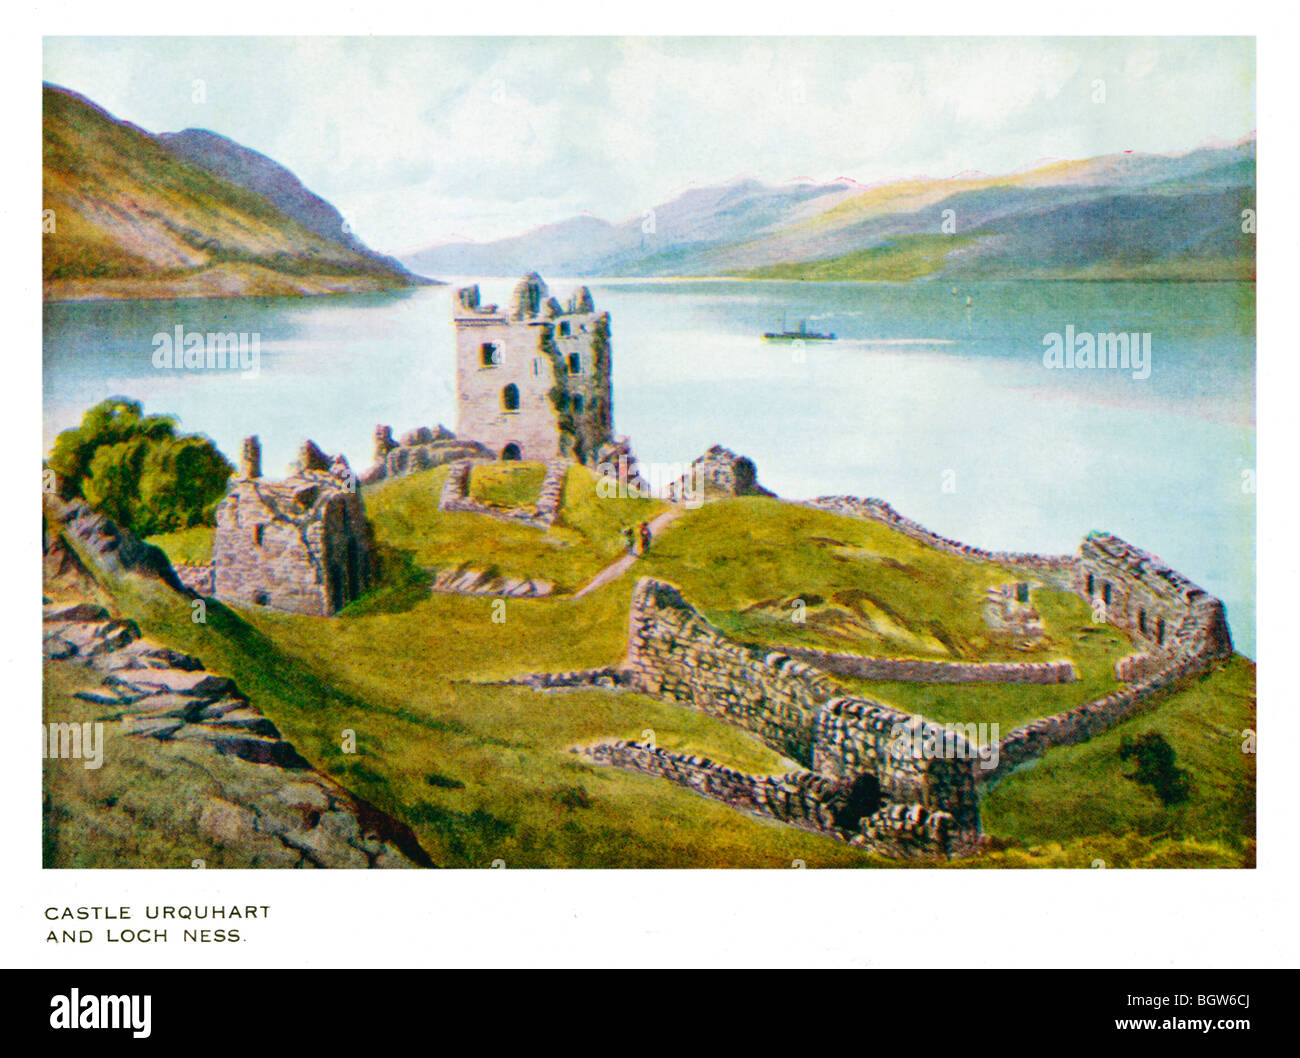 Castello Urquhart, Edwardian pittura della pittoresca rovina sulle rive di Loch Ness nel cuore della Scozia Foto Stock